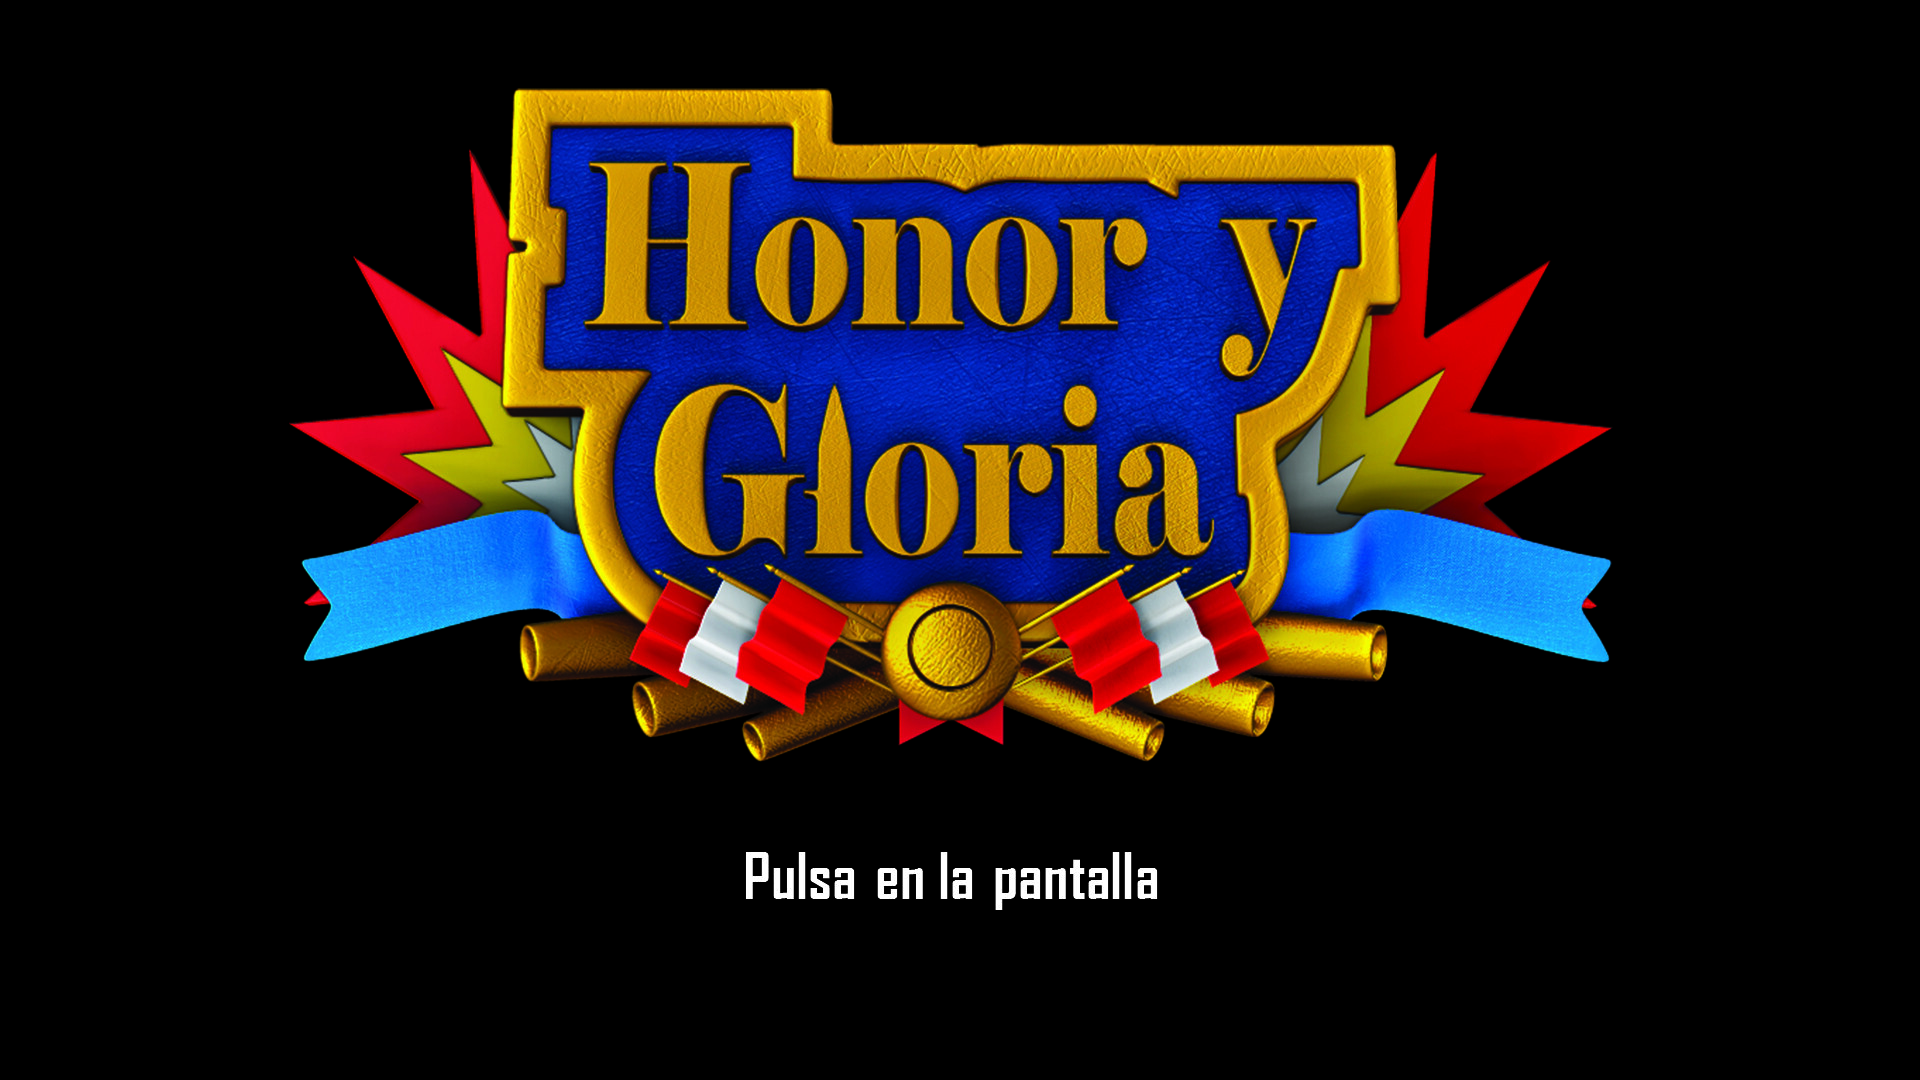 Honor y gloria